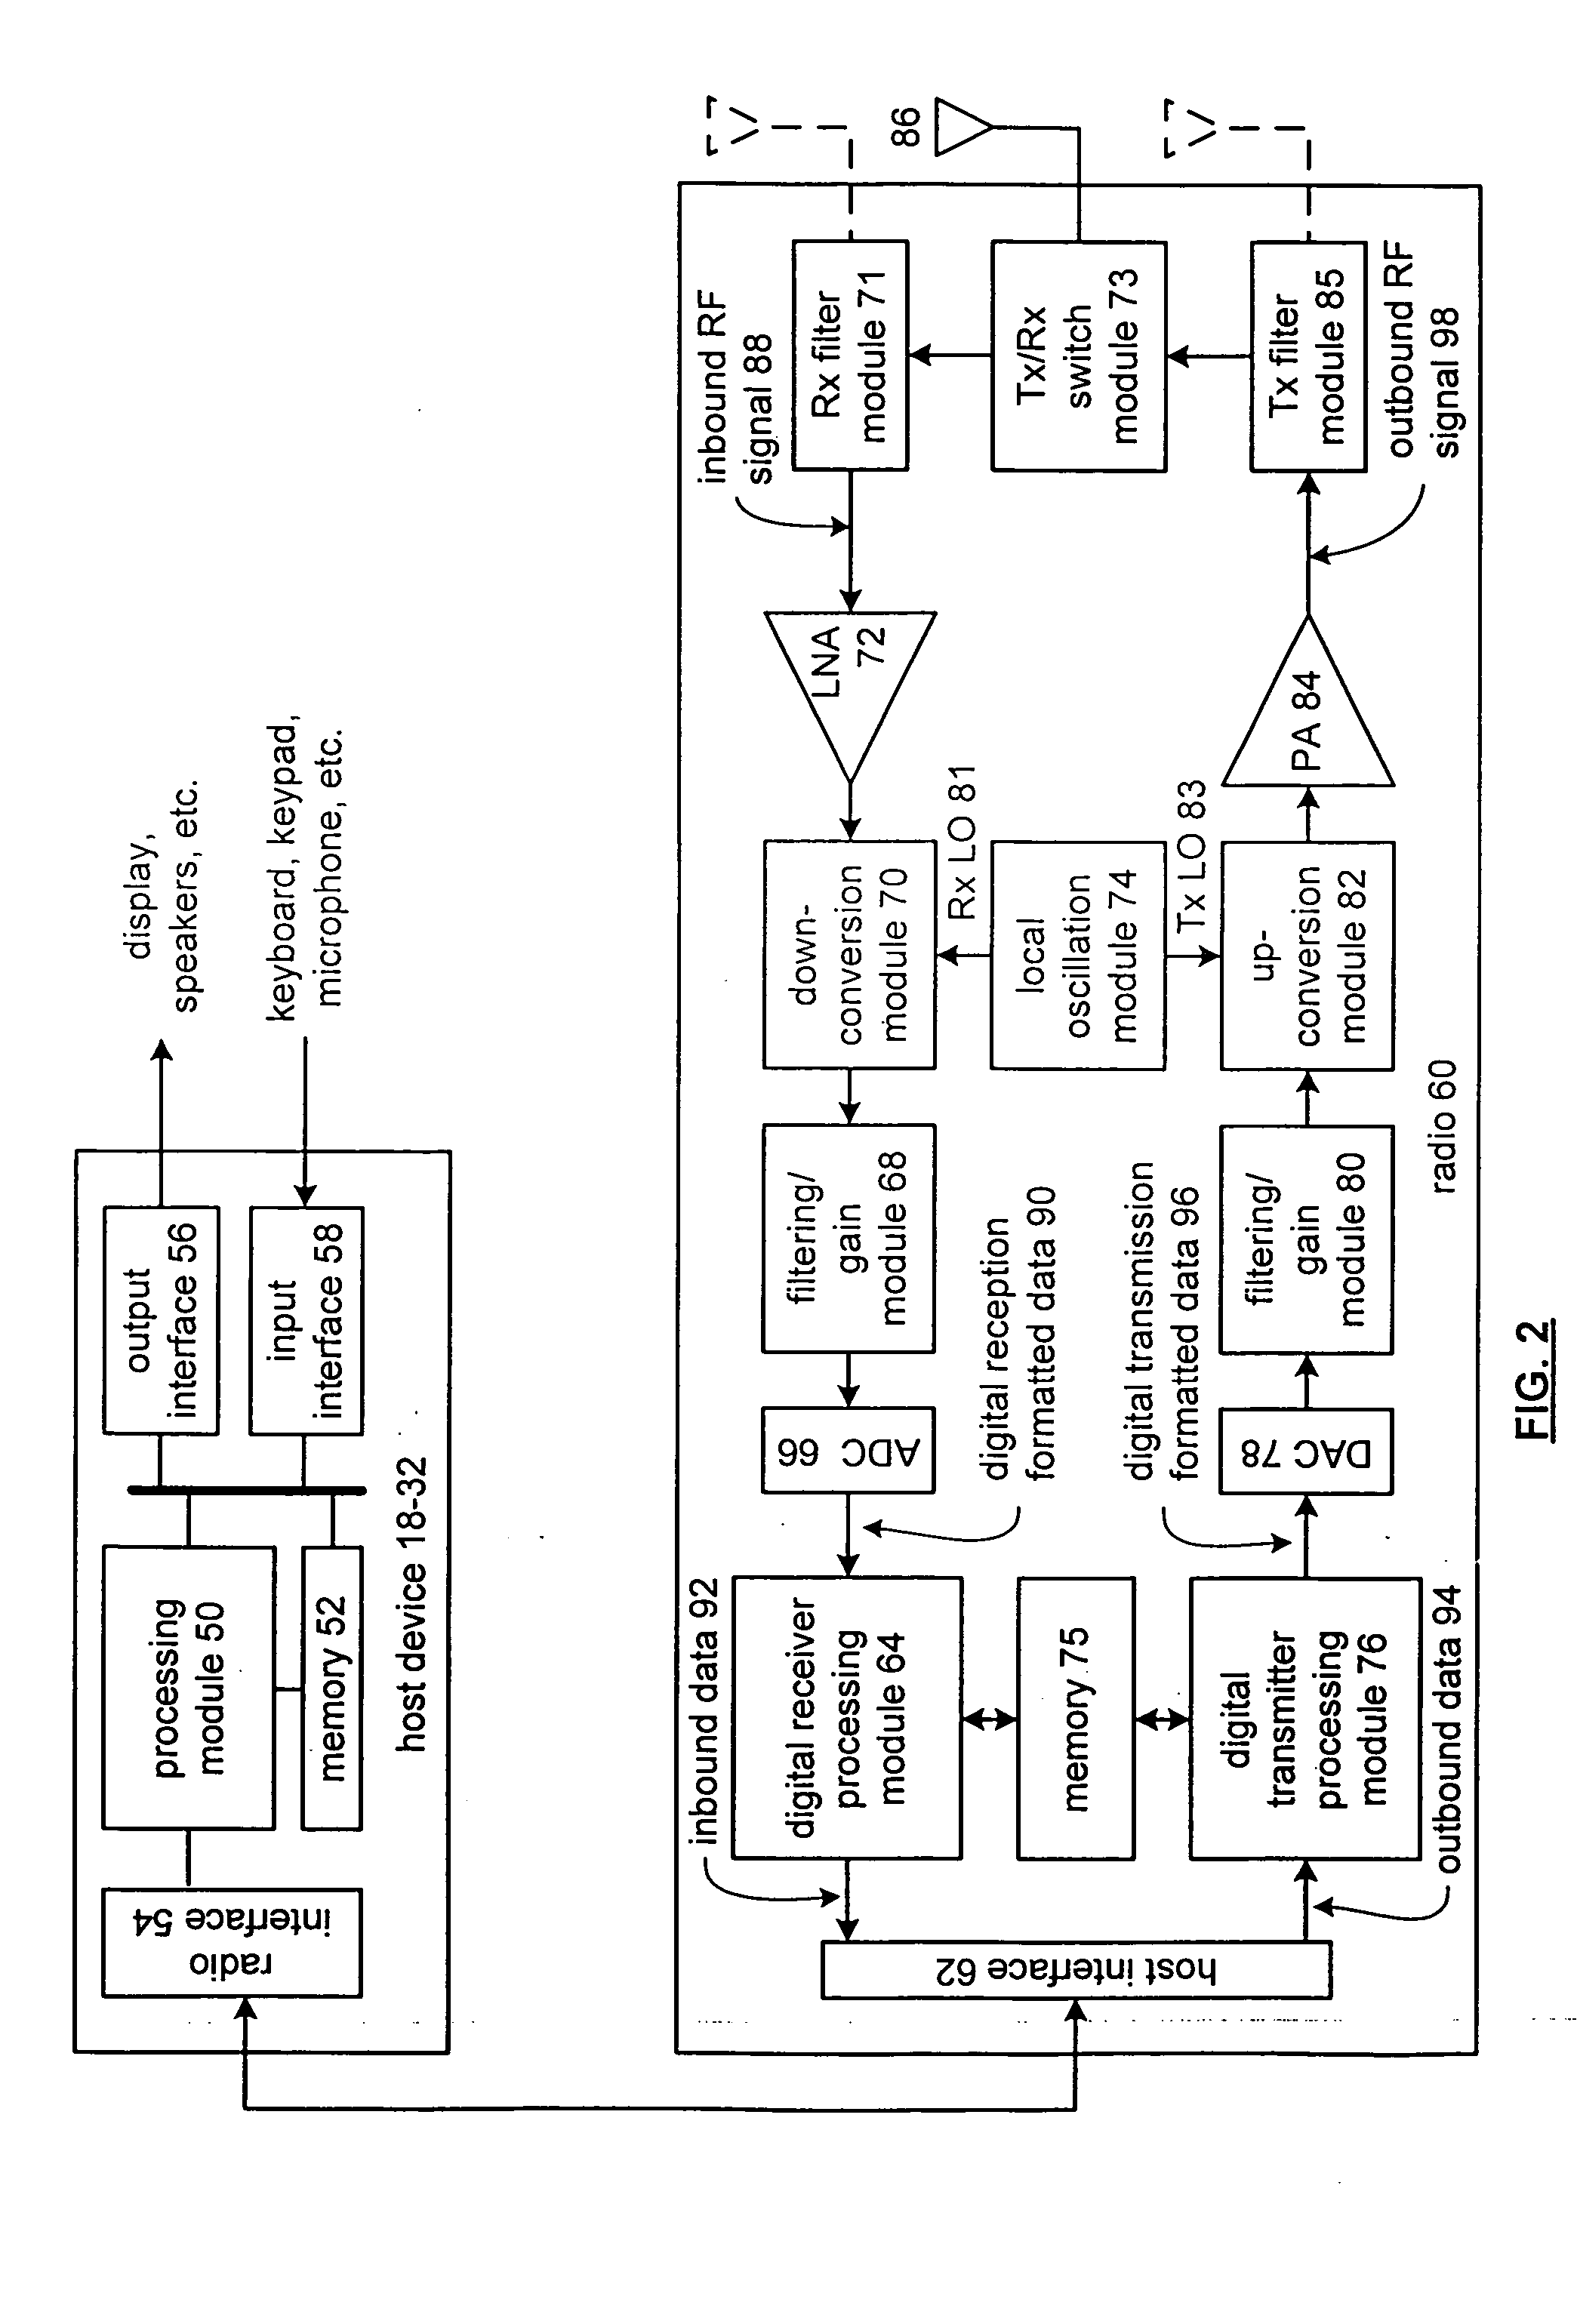 RFIC die-package configuration